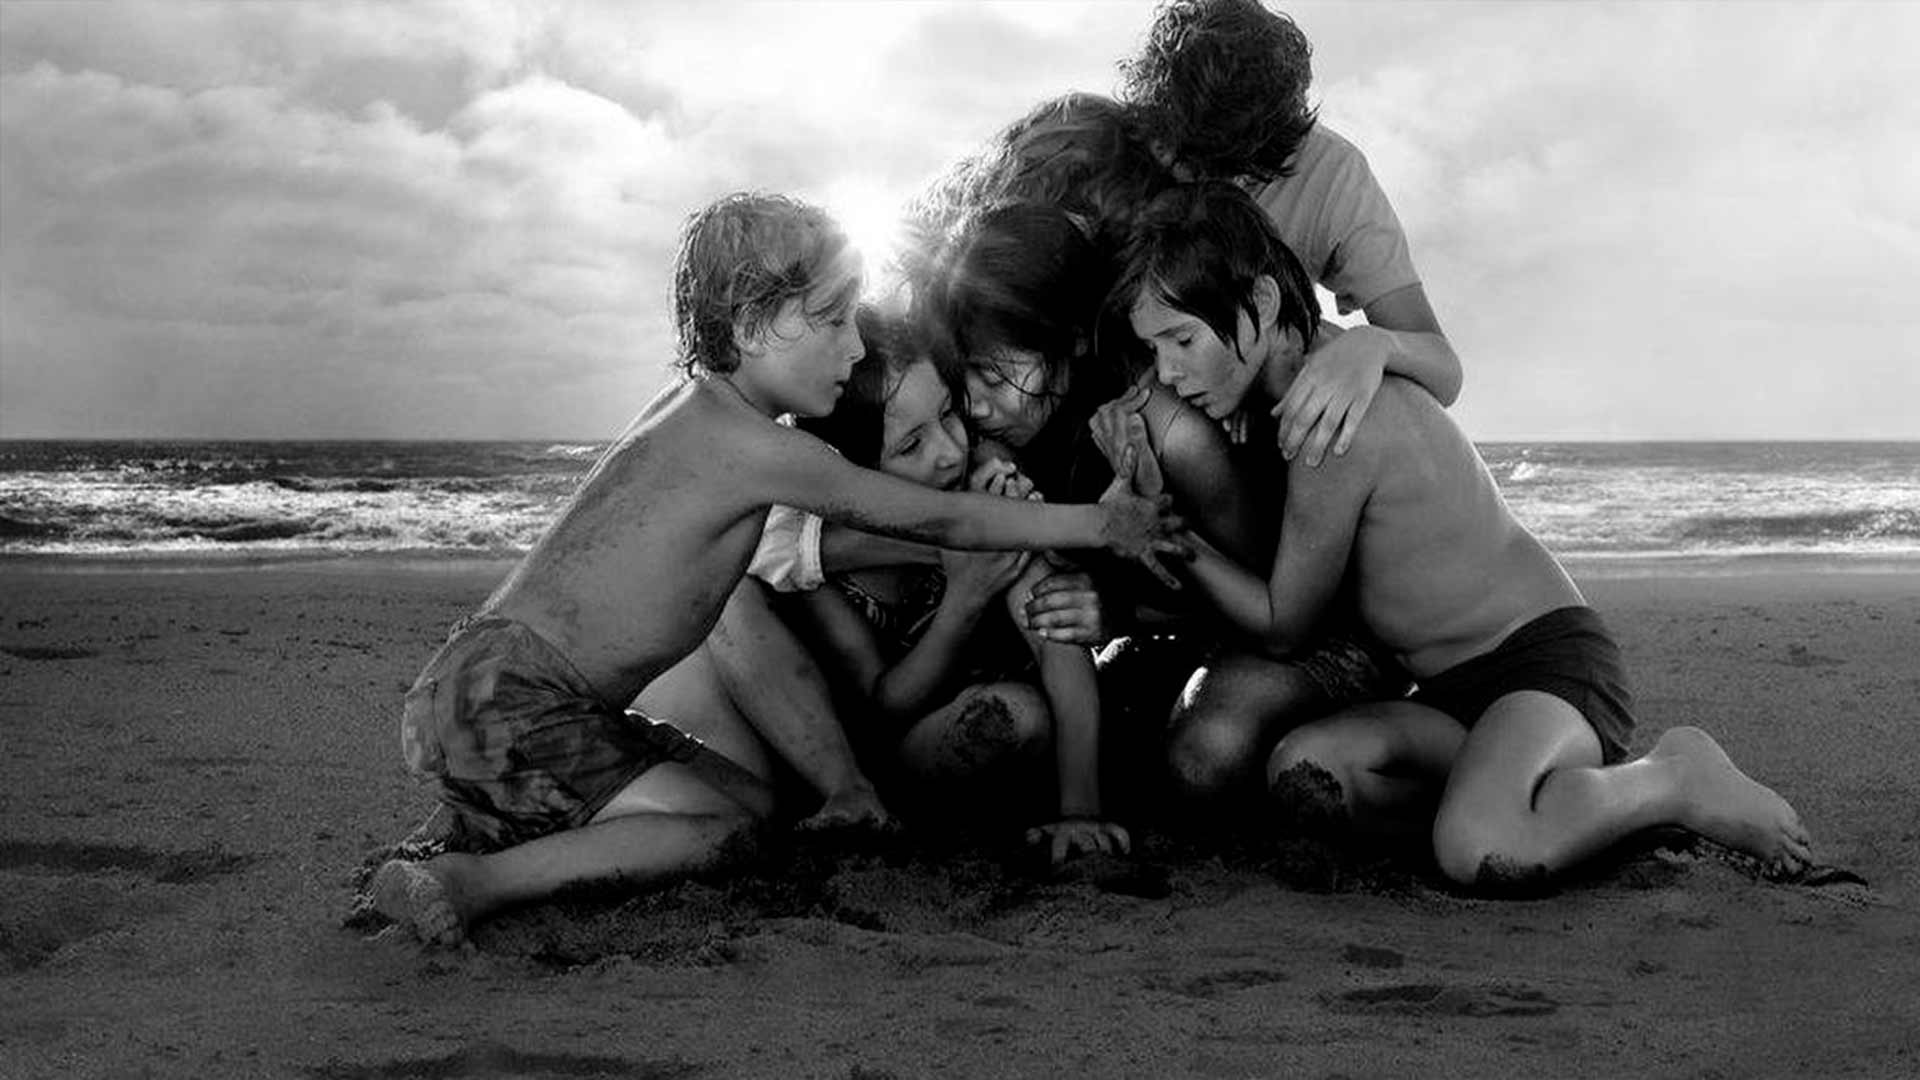  Imagem preto e branco, de crianças sentadas em uma areia se abraçando com os olhos fechados